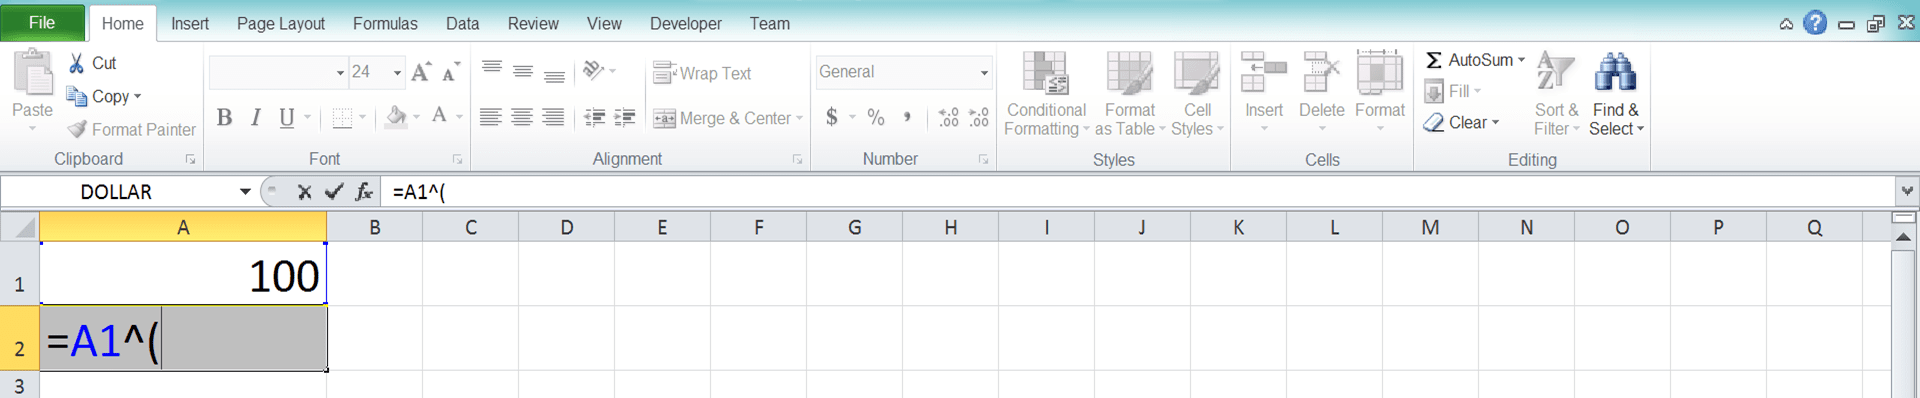 Cara Menghitung Akar di Excel Beserta Berbagai Rumus dan Fungsinya - Screenshot Langkah 1-2